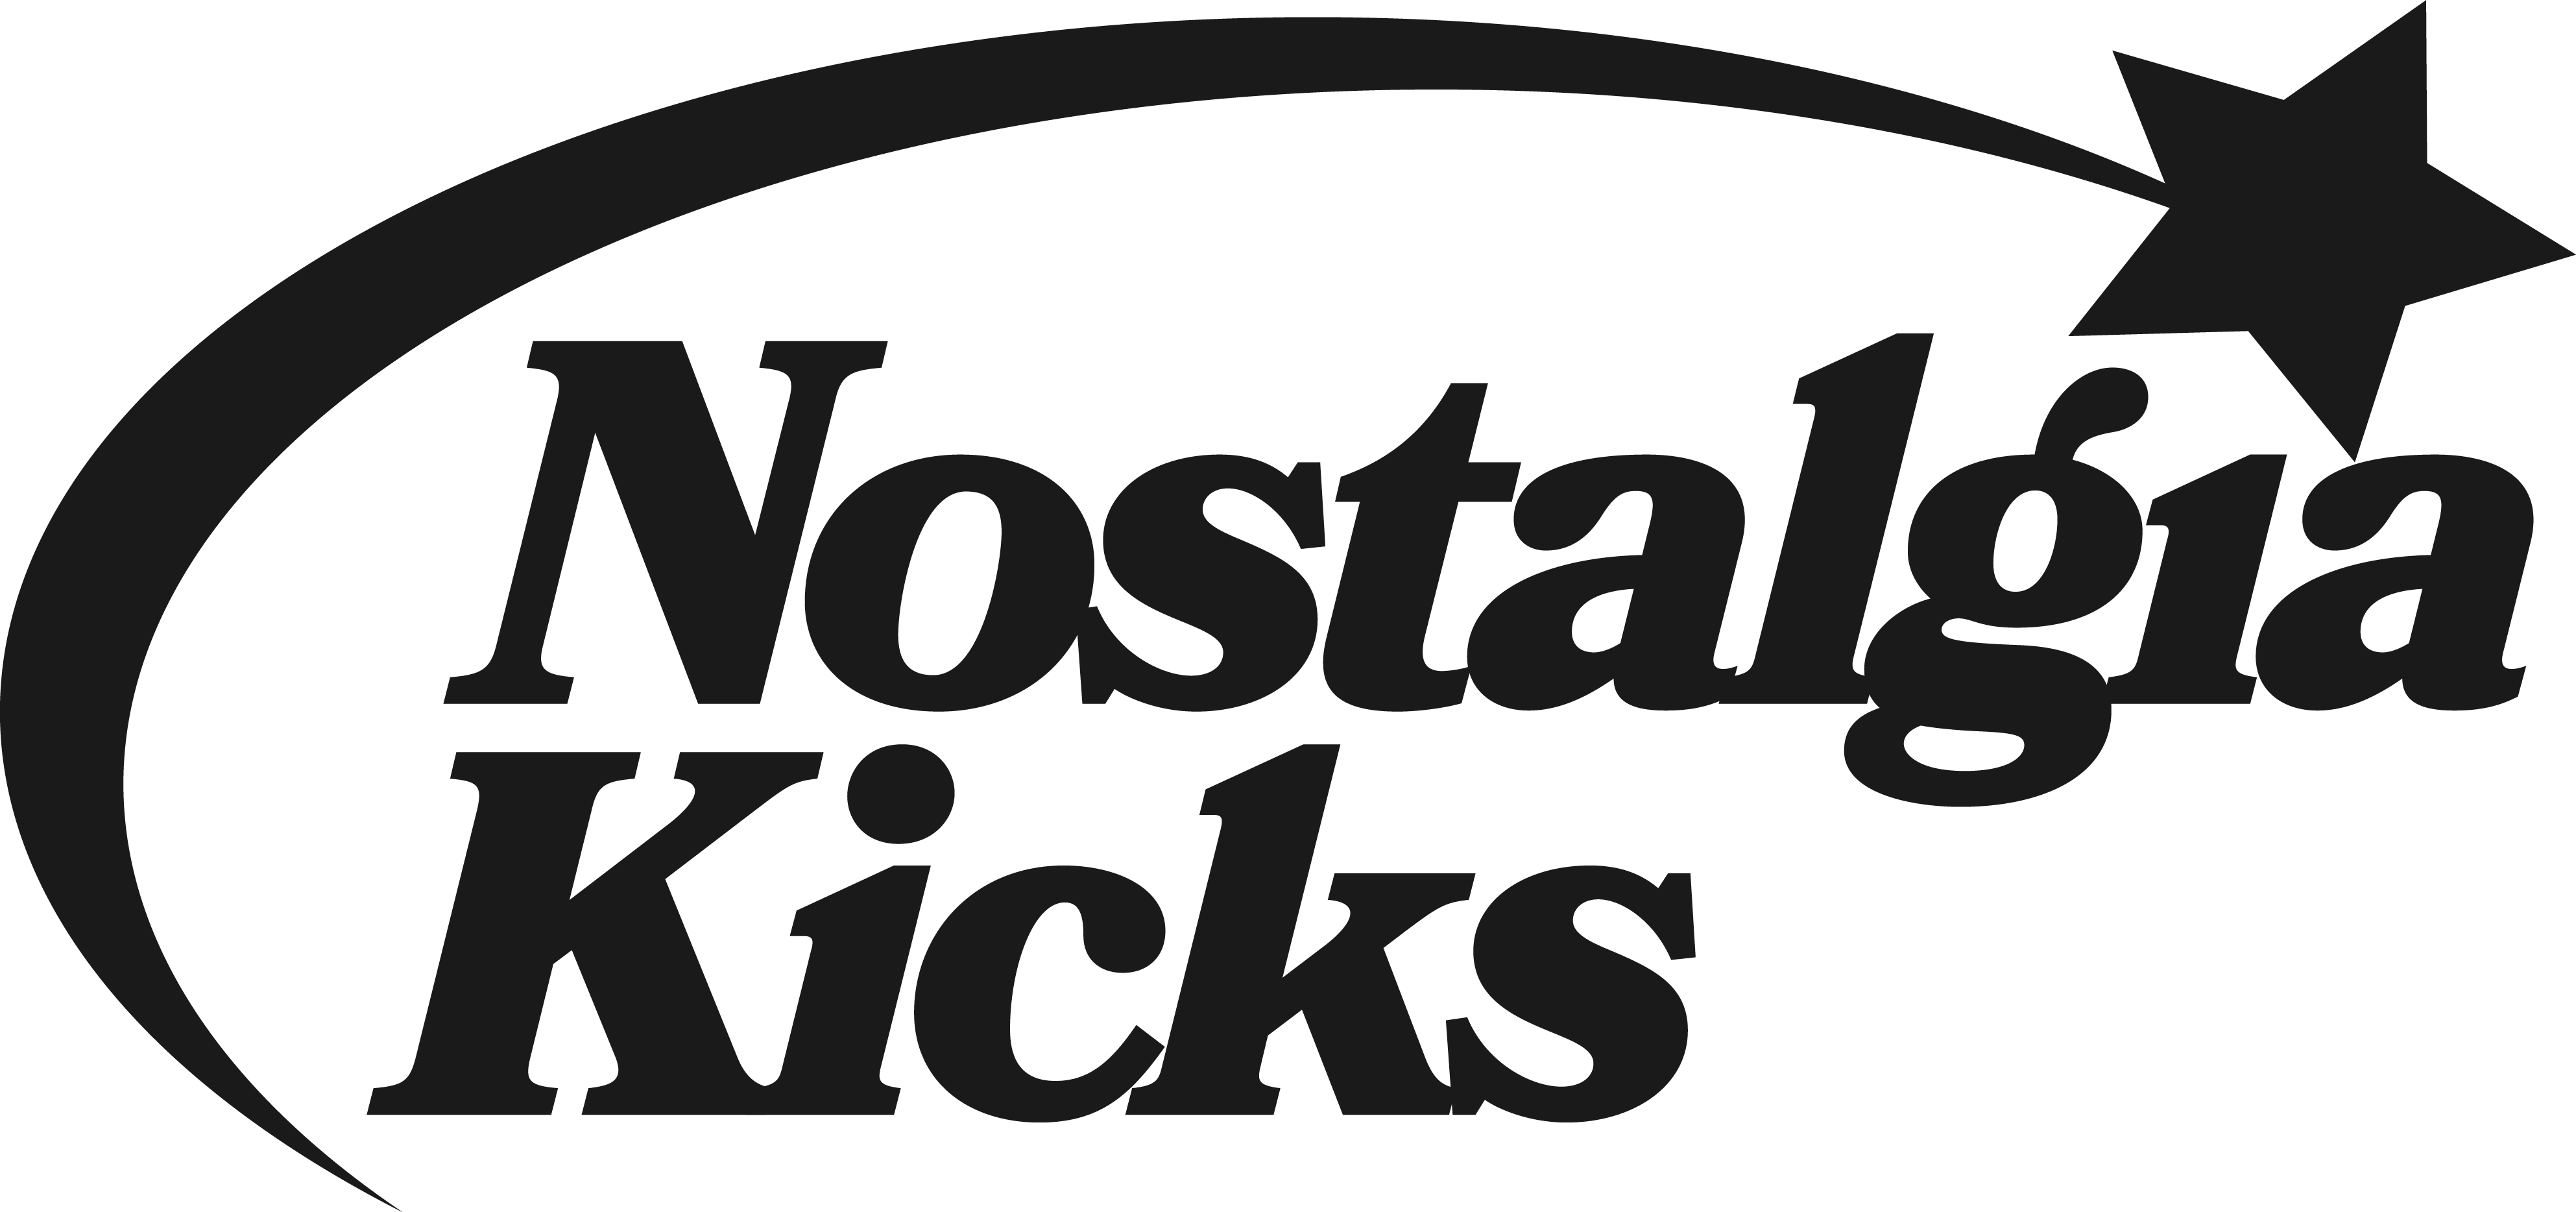 nostalgia kicks